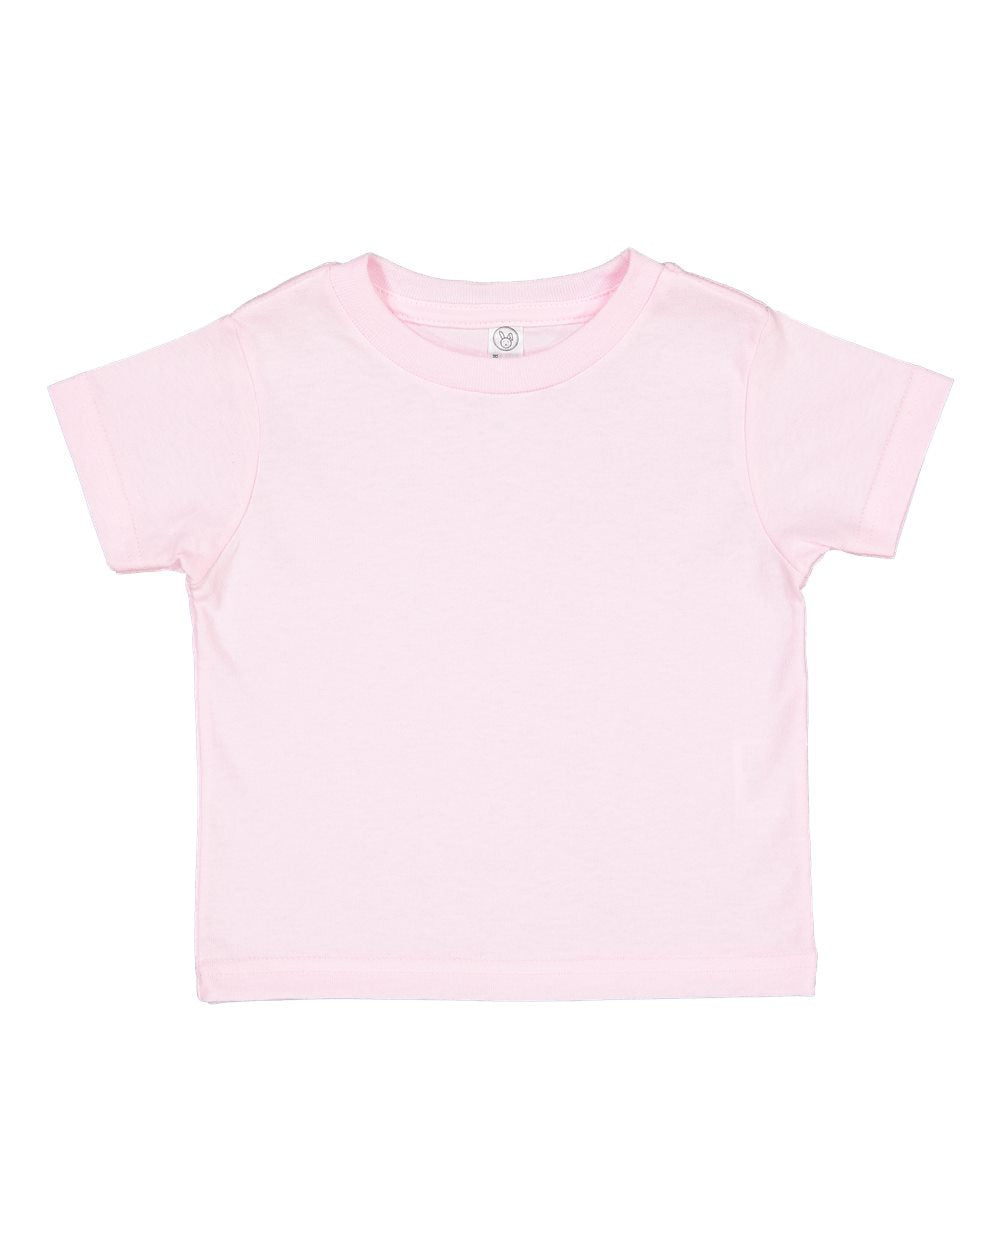 rabbit skins toddler cotton jersey tee ballerina pink